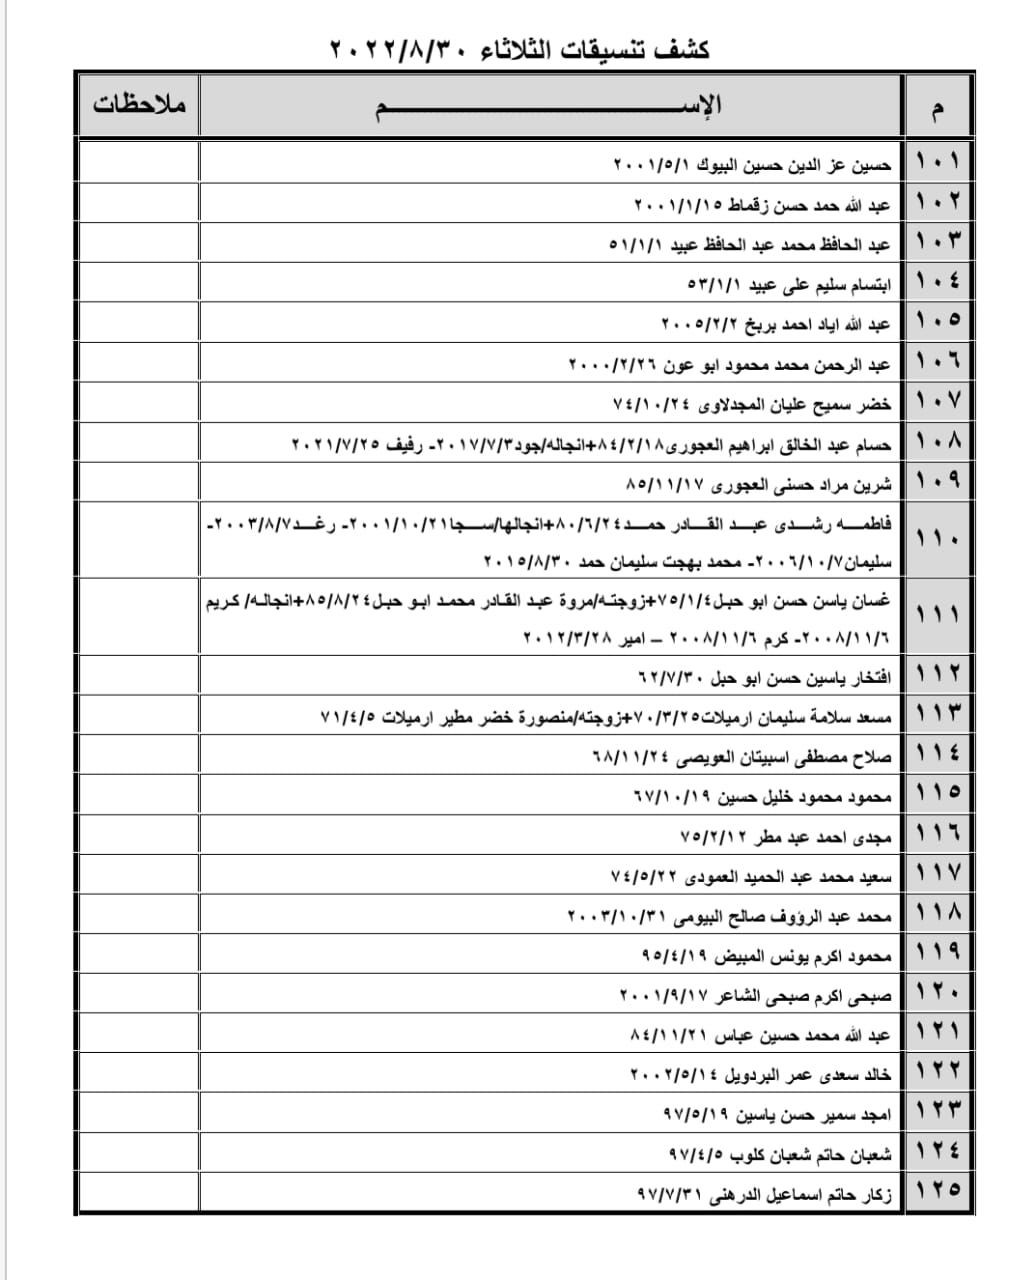 بالأسماء: كشف "تنسيقات مصرية" للسفر عبر معبر رفح يوم الثلاثاء 30 أغسطس